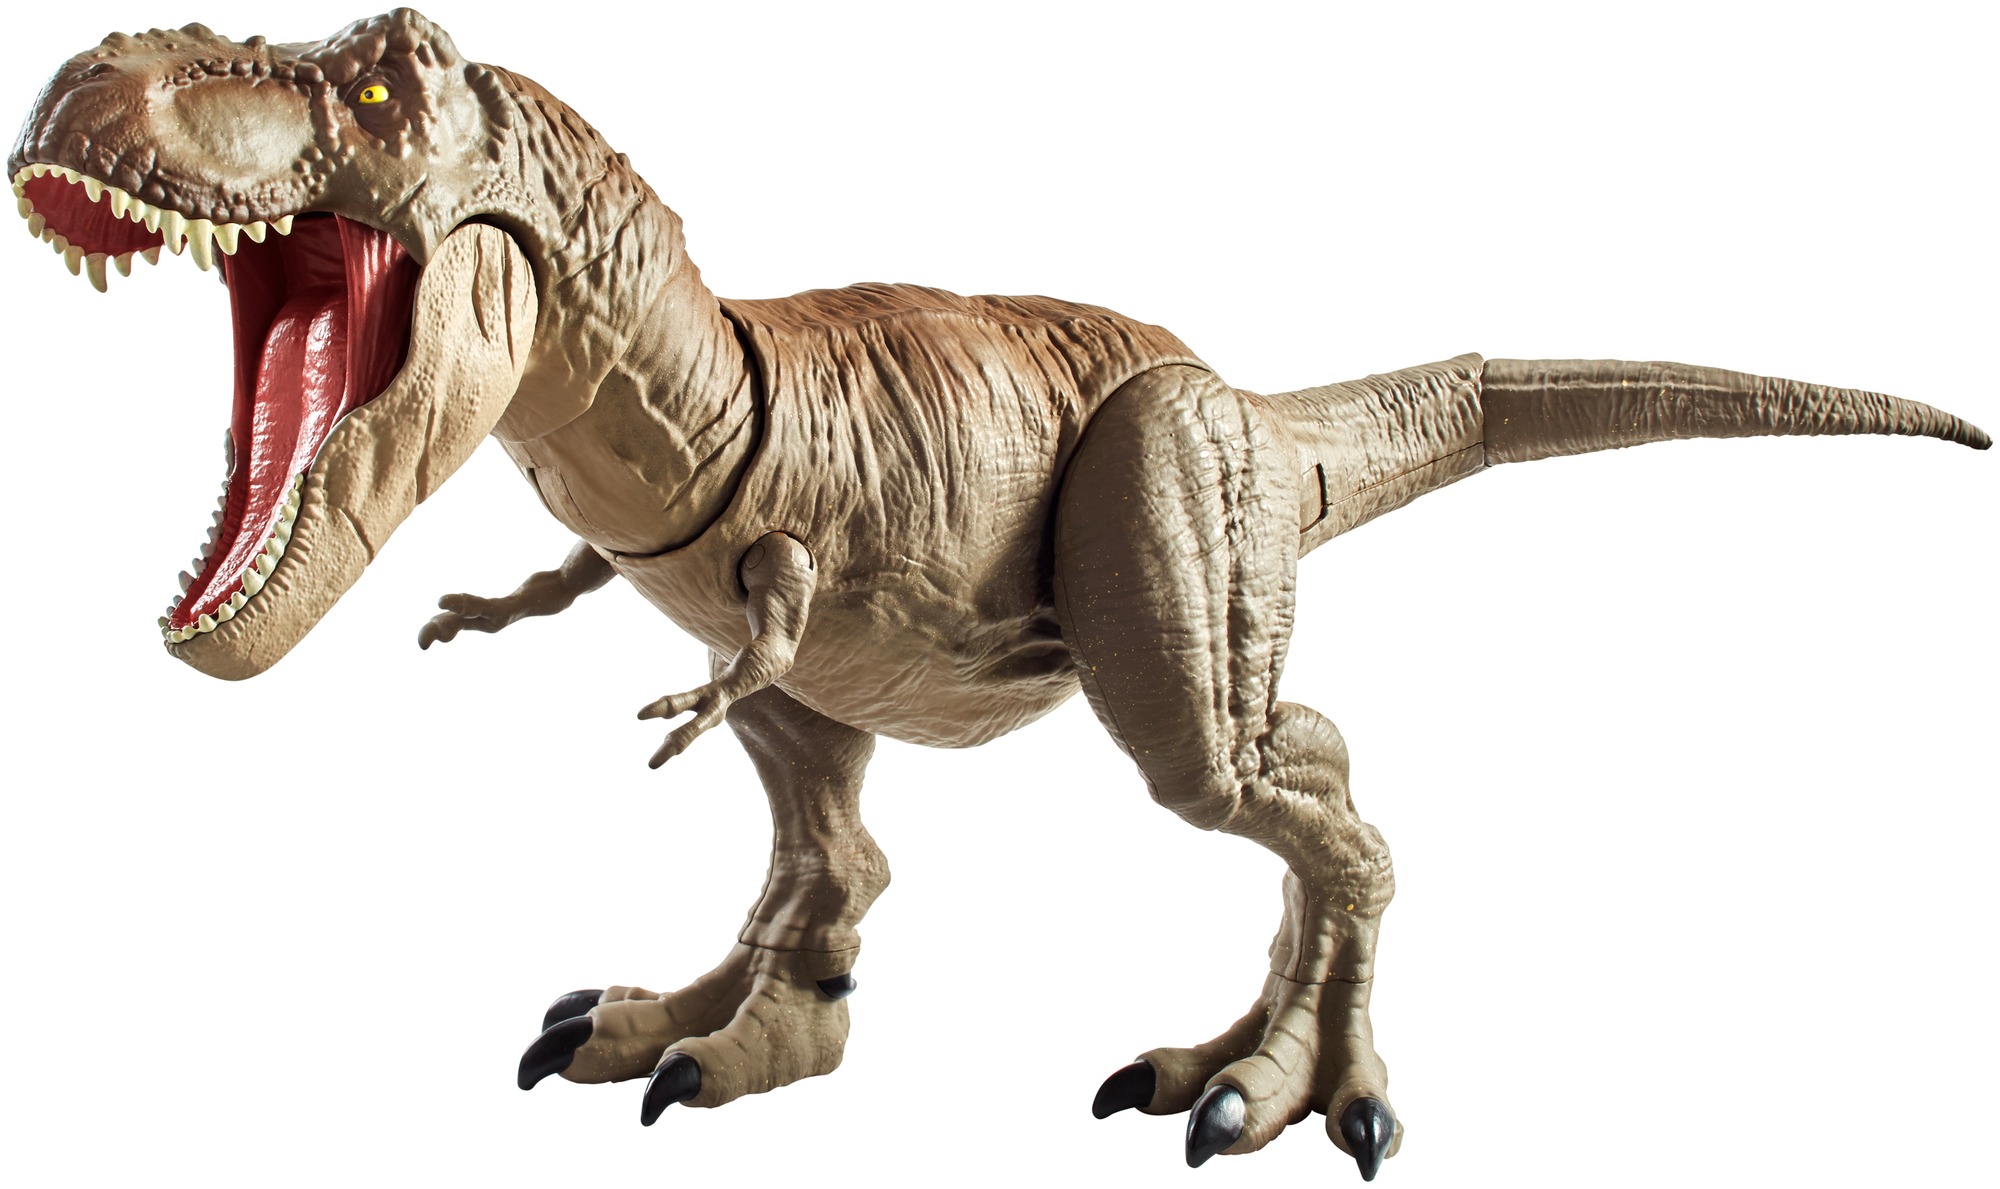 2Stk Kinder Jurassic World Dinosaurier Tyrannosaurus Rex Spielzeug 33.5*23*10cm 